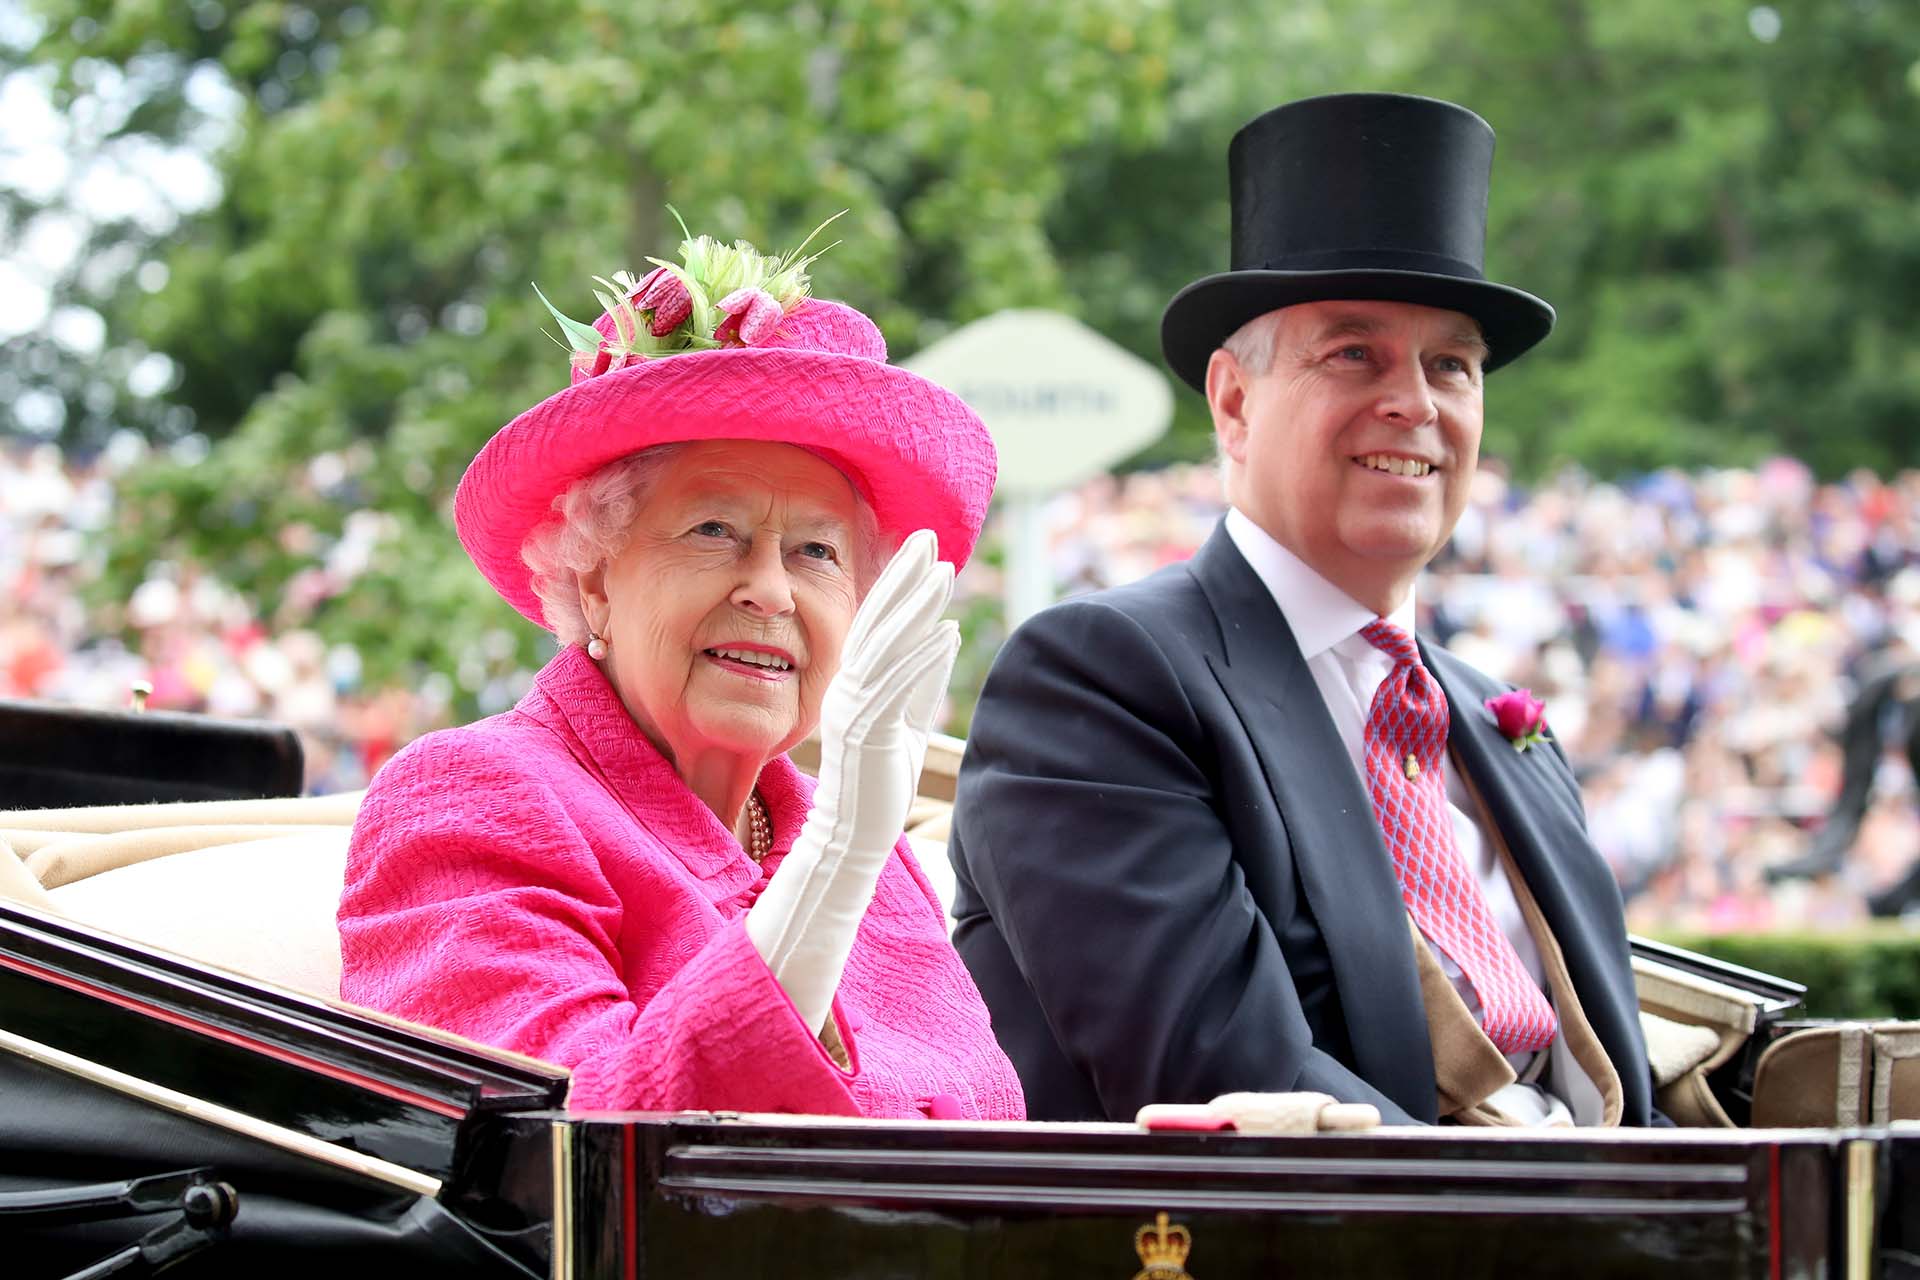 Foto de archivo: la reina Isabel II y el príncipe Andrés en un acto en Ascot, Inglaterra, el 22 de junio de 2017 (Chris Jackson/Getty Images)